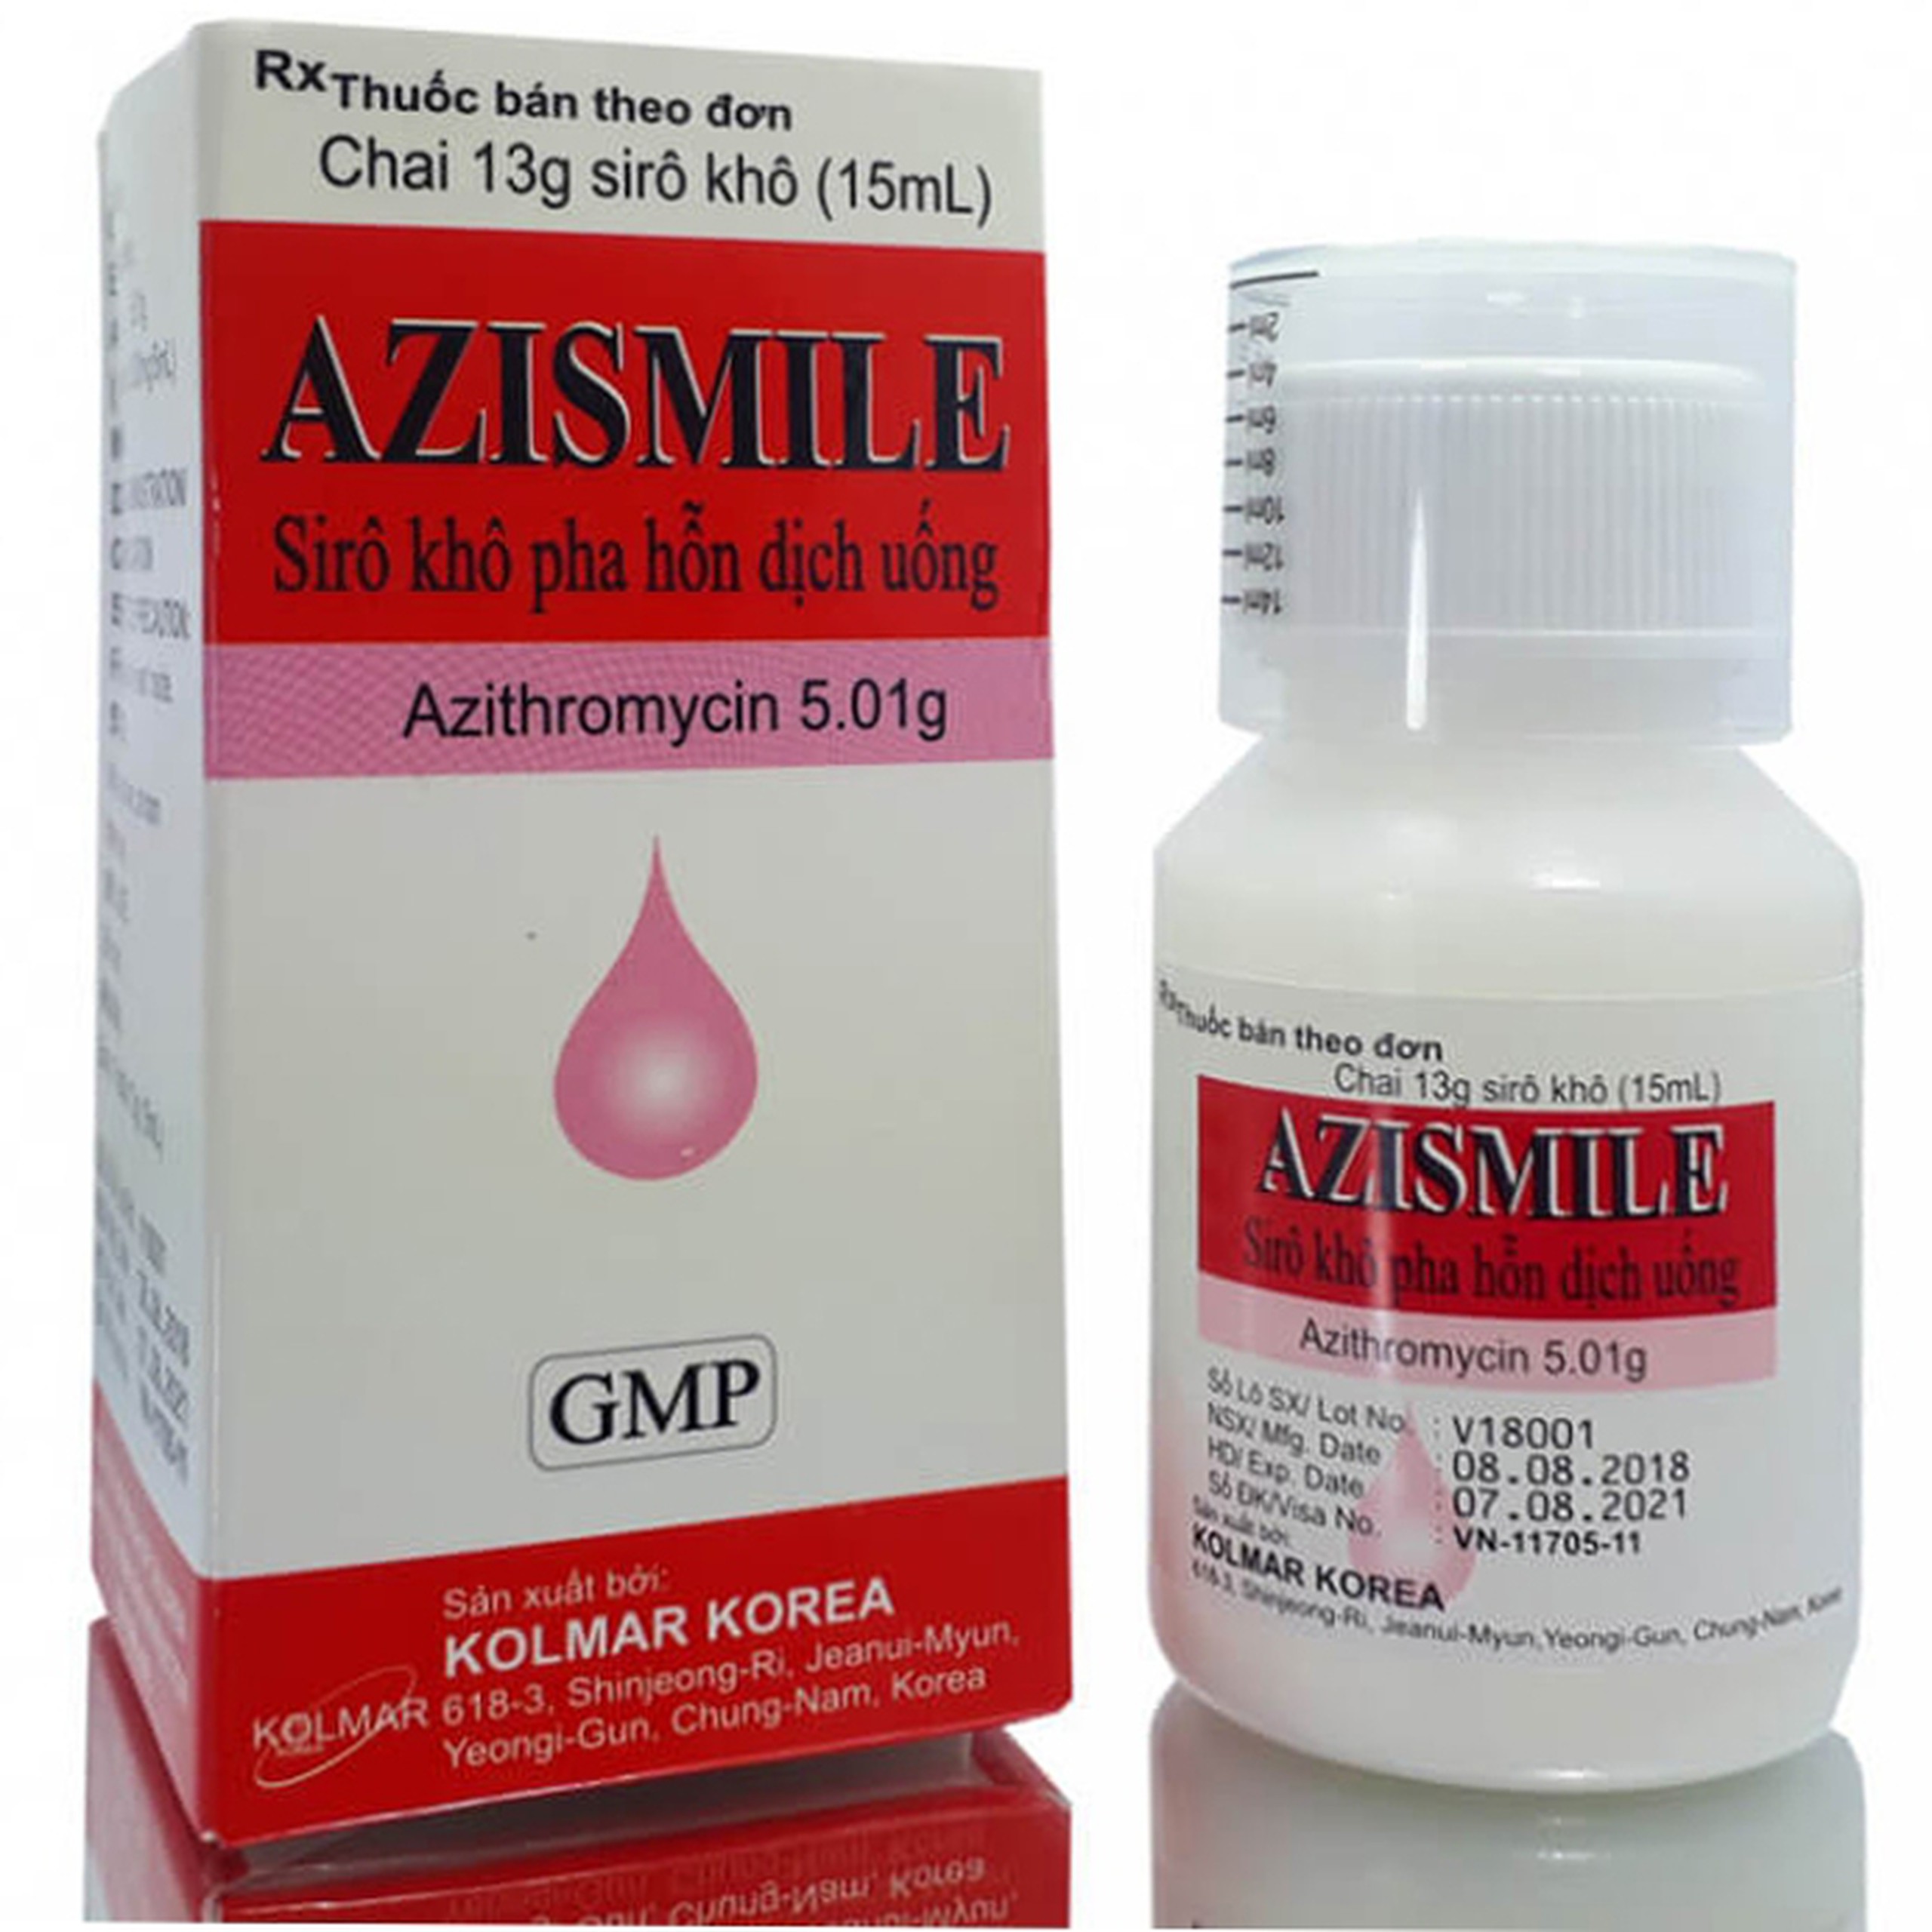 Siro khô pha hỗn dịch uống Azismile 5.01g Kolmar điều trị nhiễm khuẩn (15ml)